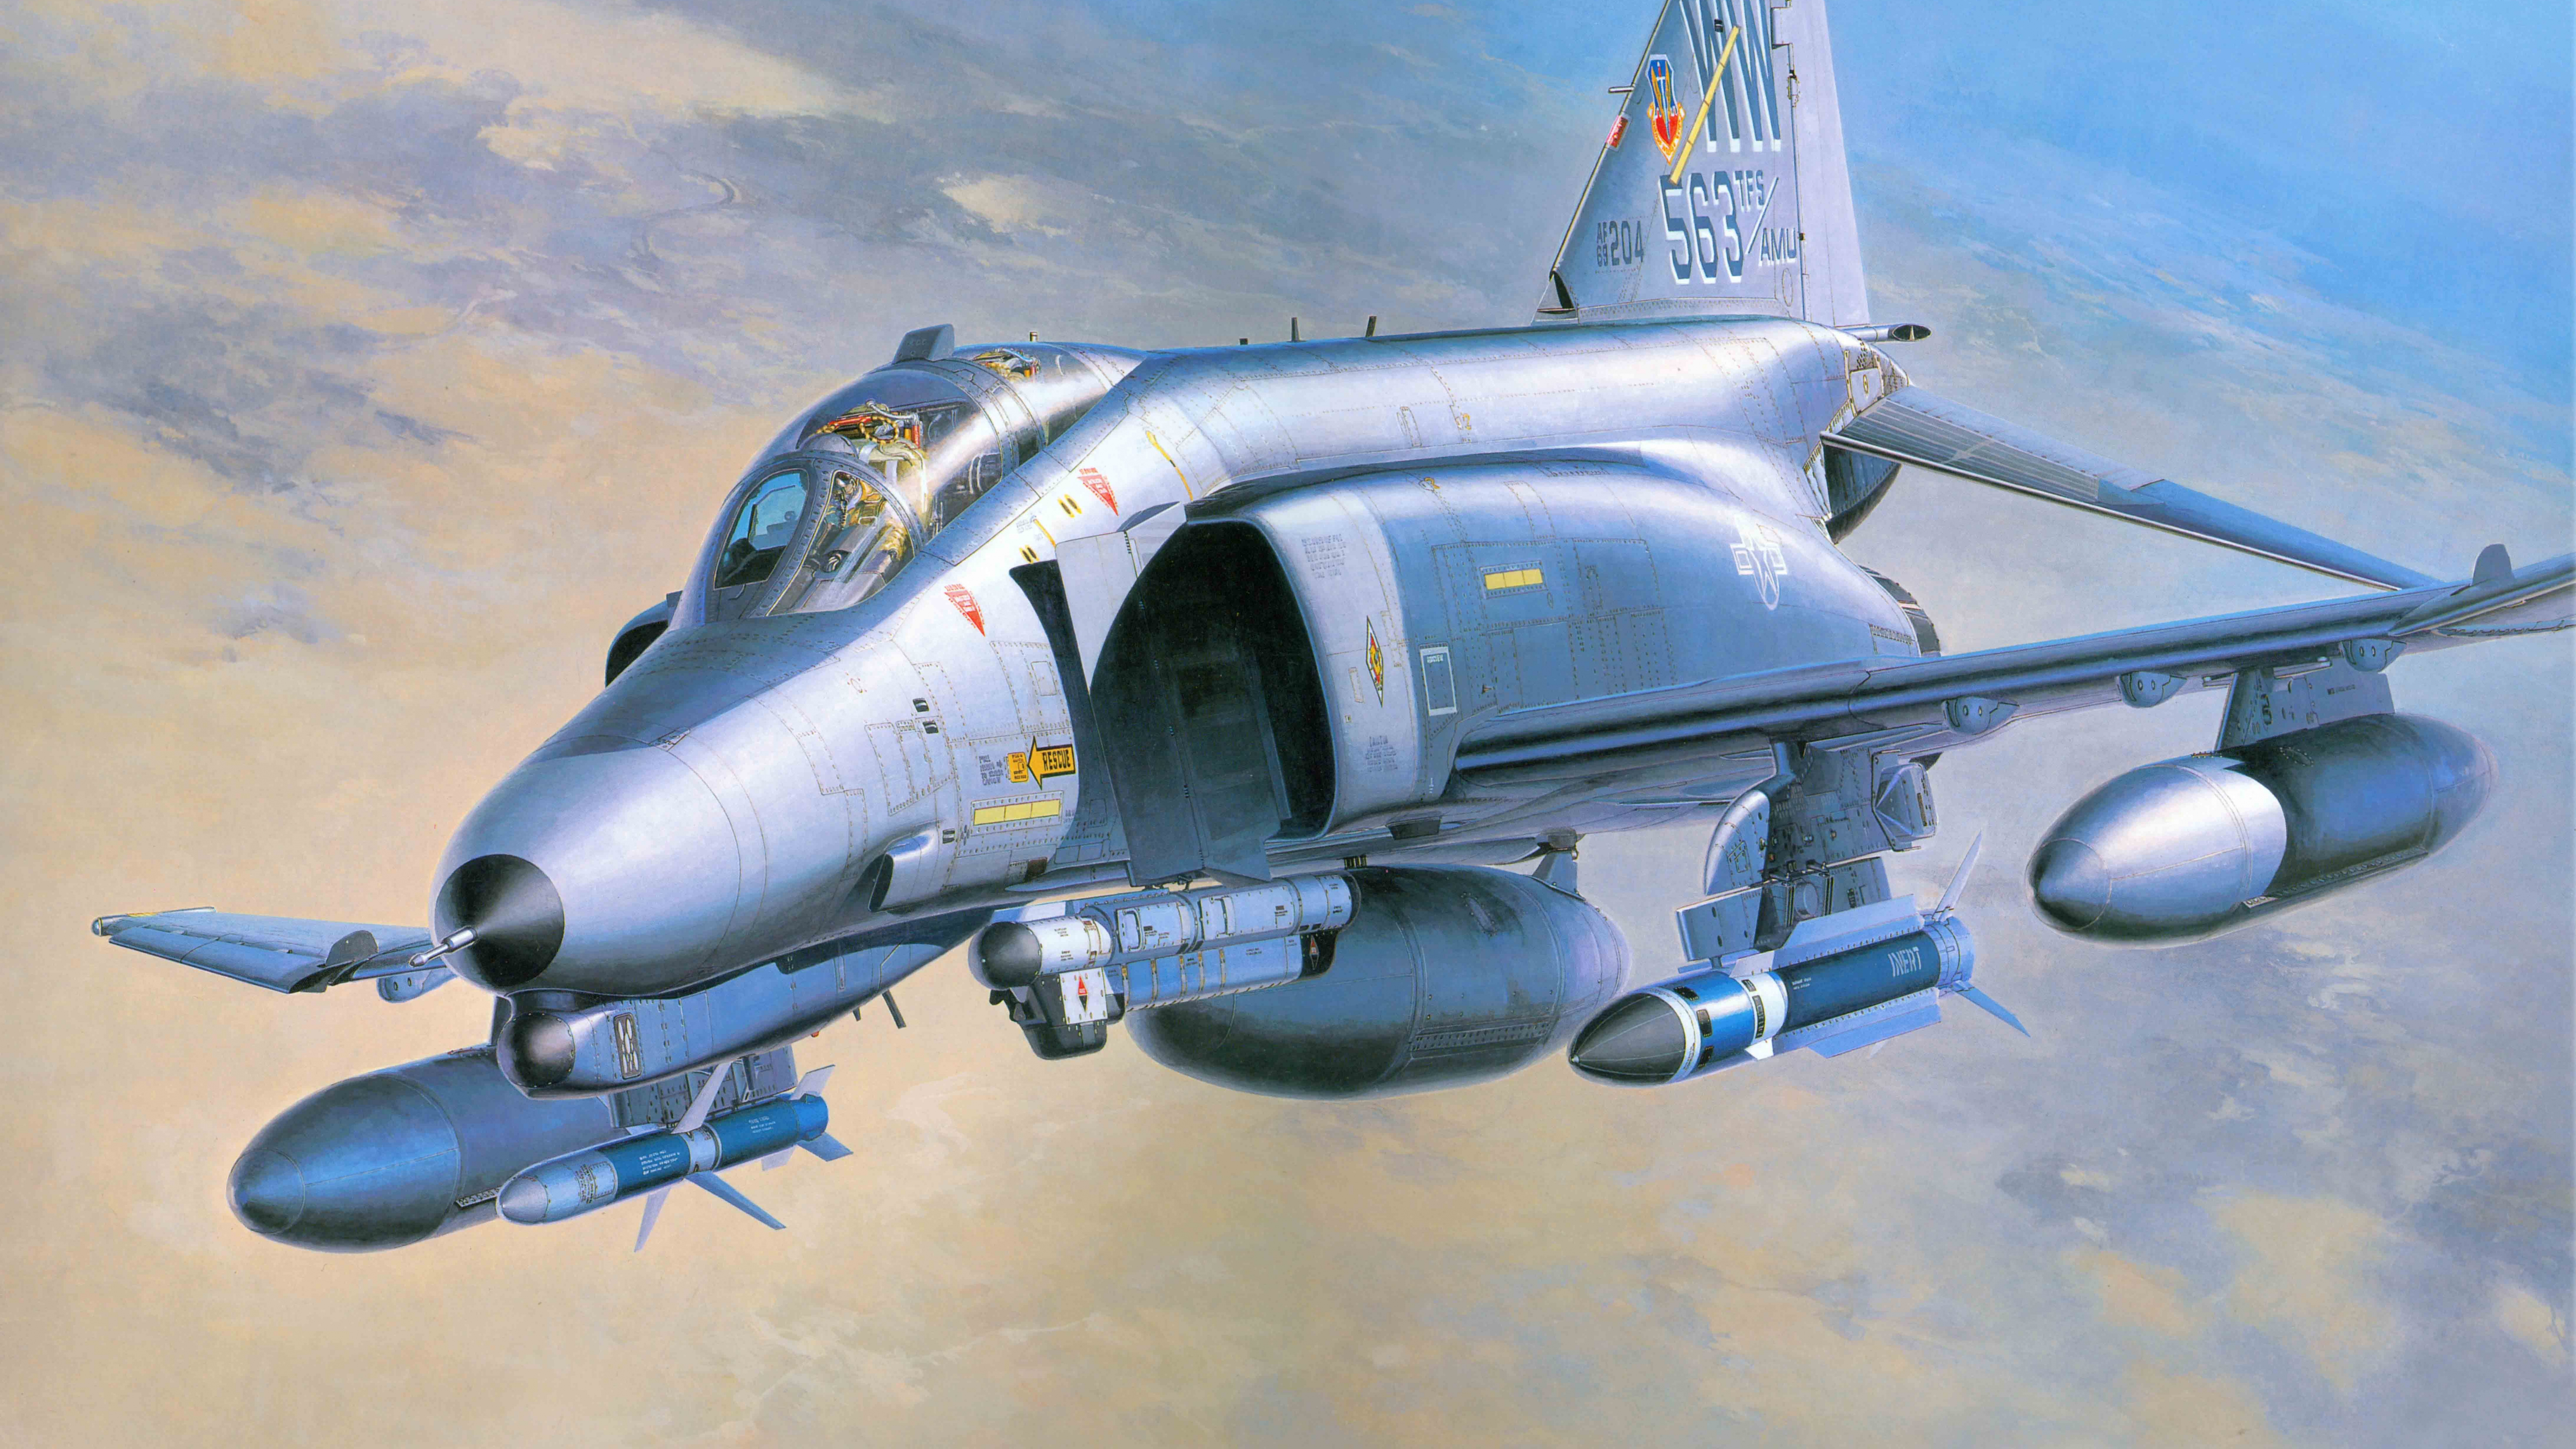 Grauer Kampfjet Tagsüber in Der Luft. Wallpaper in 7680x4320 Resolution